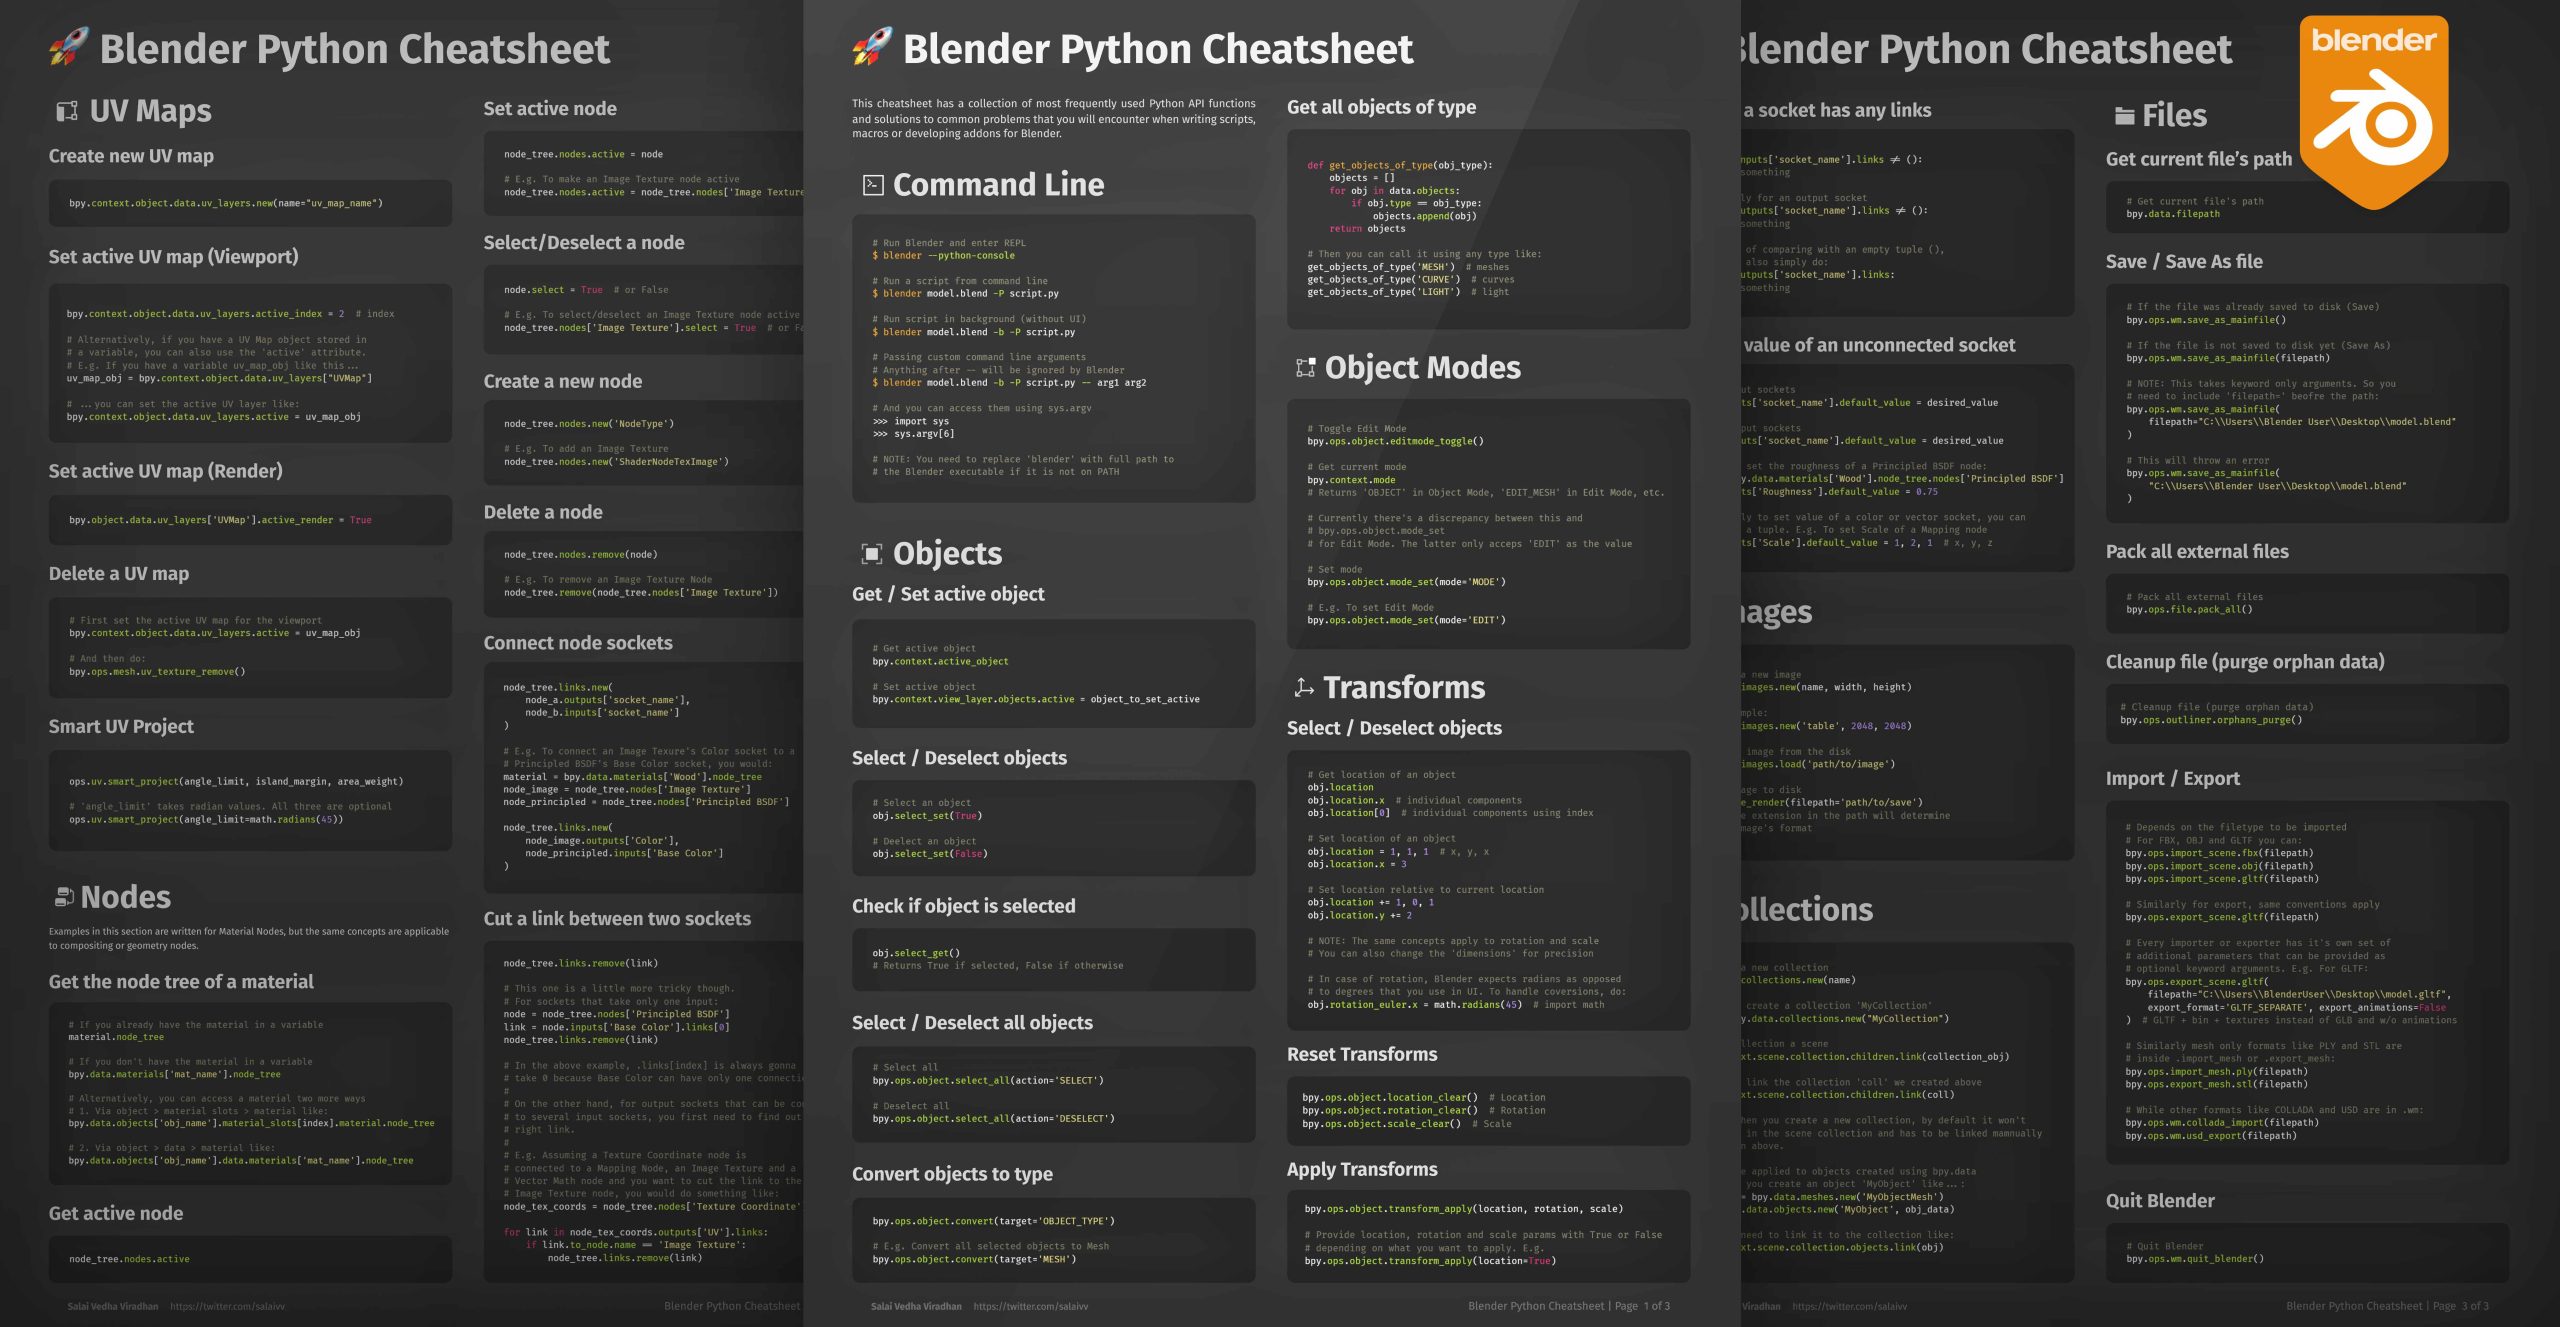 Cheat sheet terraria. Коды Пайтон для блендер. Хоткеи блендер. Python для Blender код обращения к кнопкам. Как обратиться к элементу в Blender через Python.